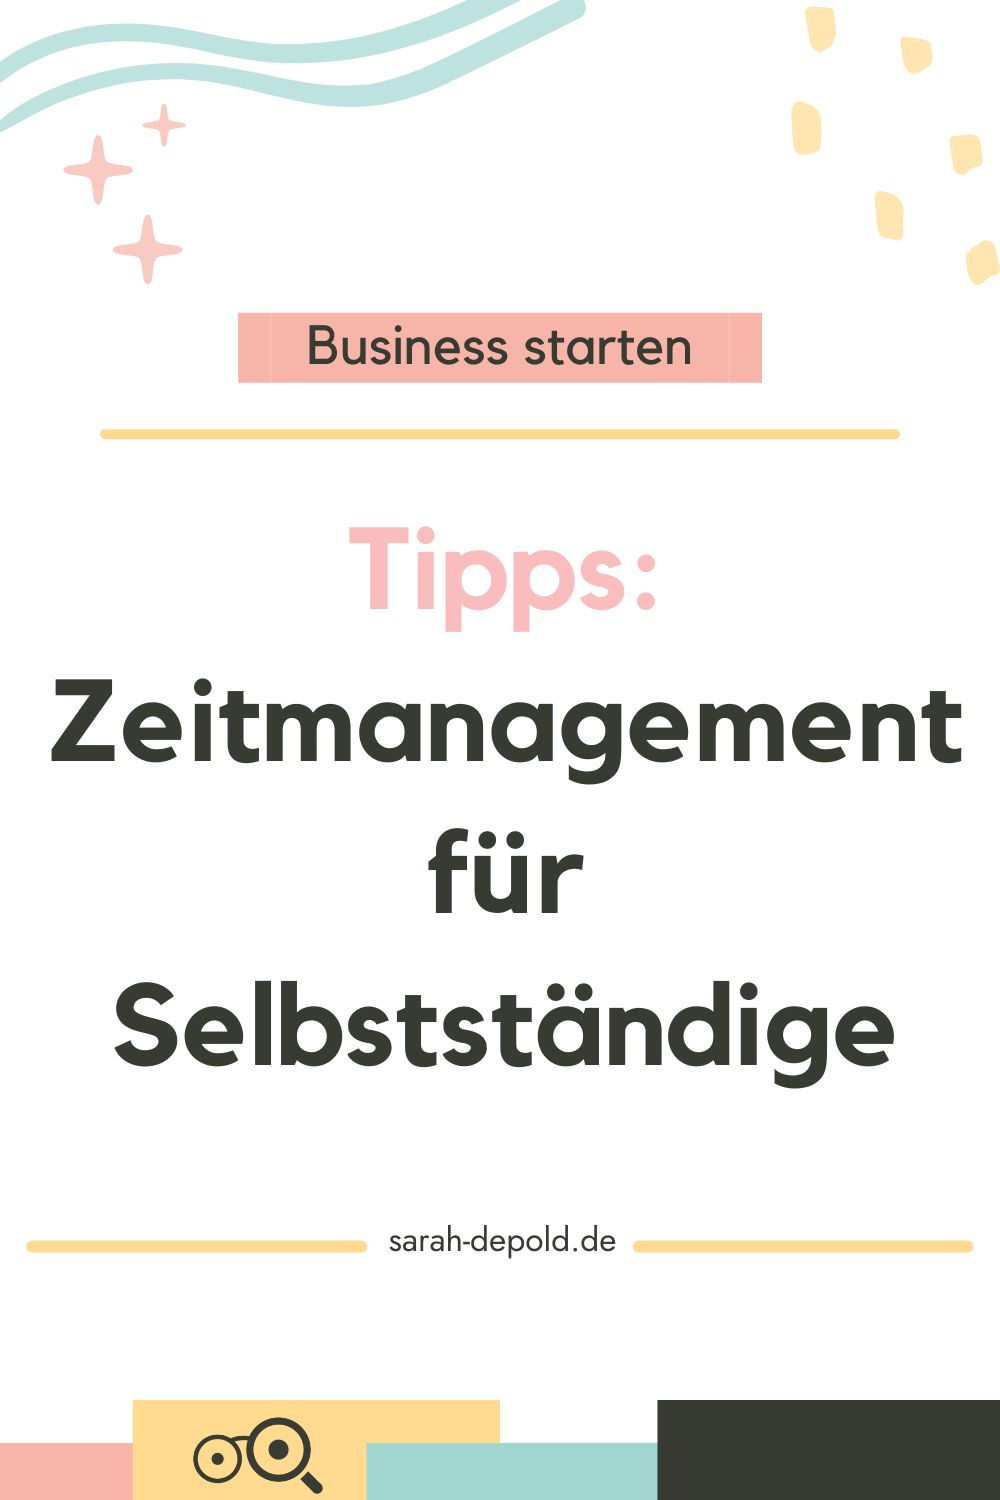 Zeitmanagement für Selbstständige - 13 Tipps - sarah-depold.de